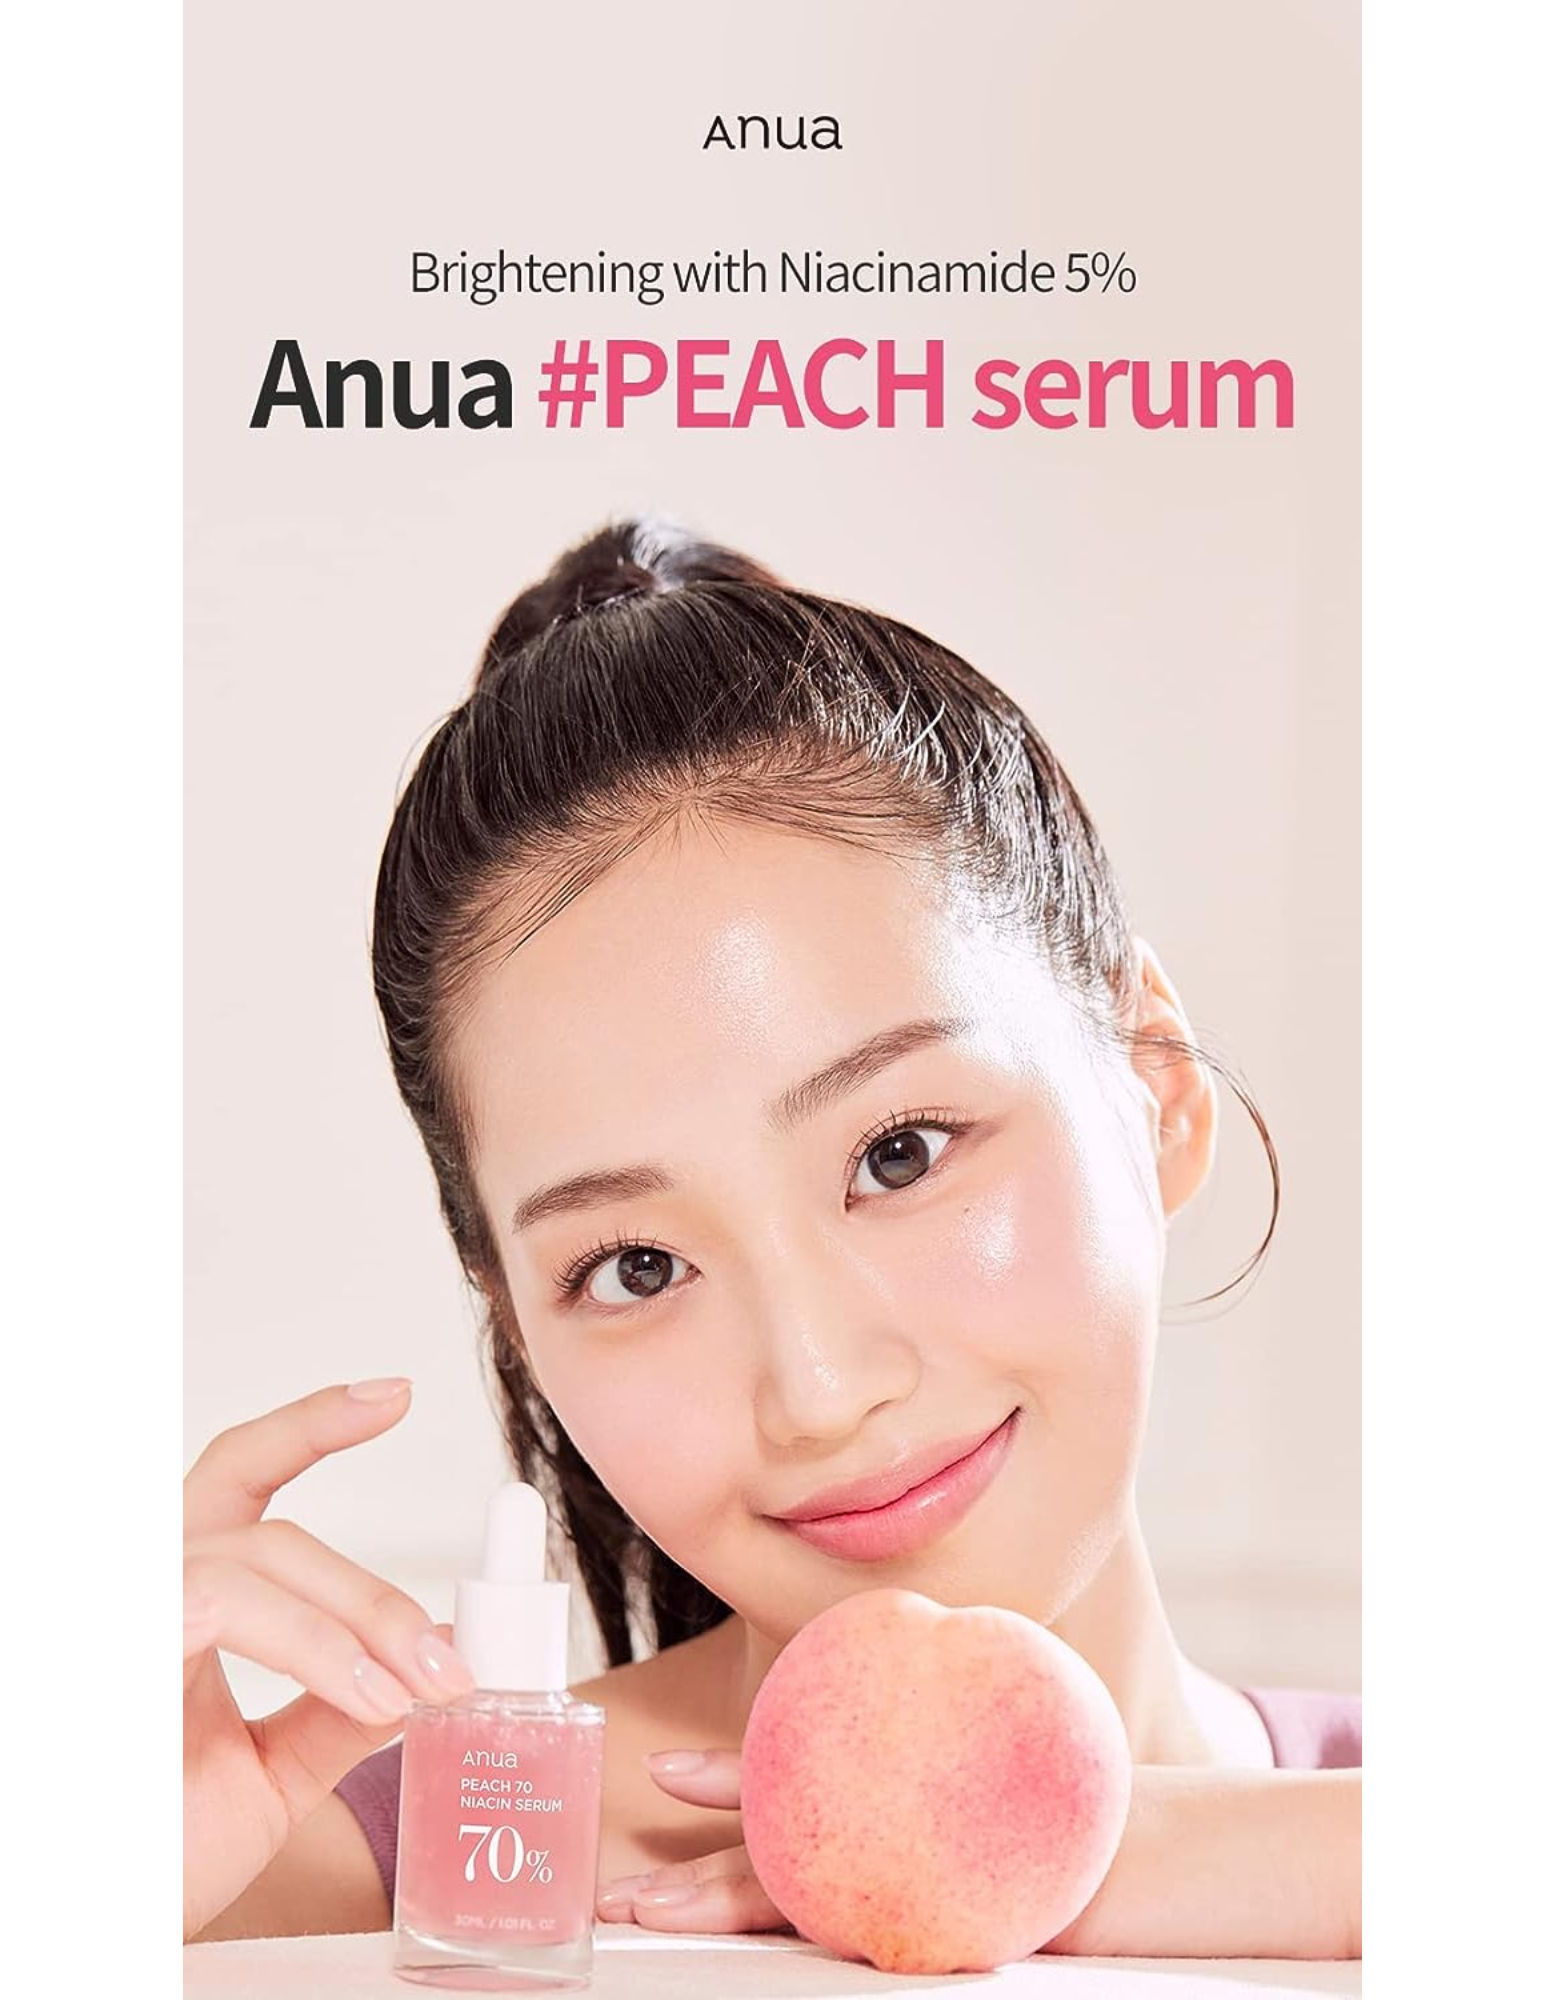 Anua Peach 70% Niacin Serum